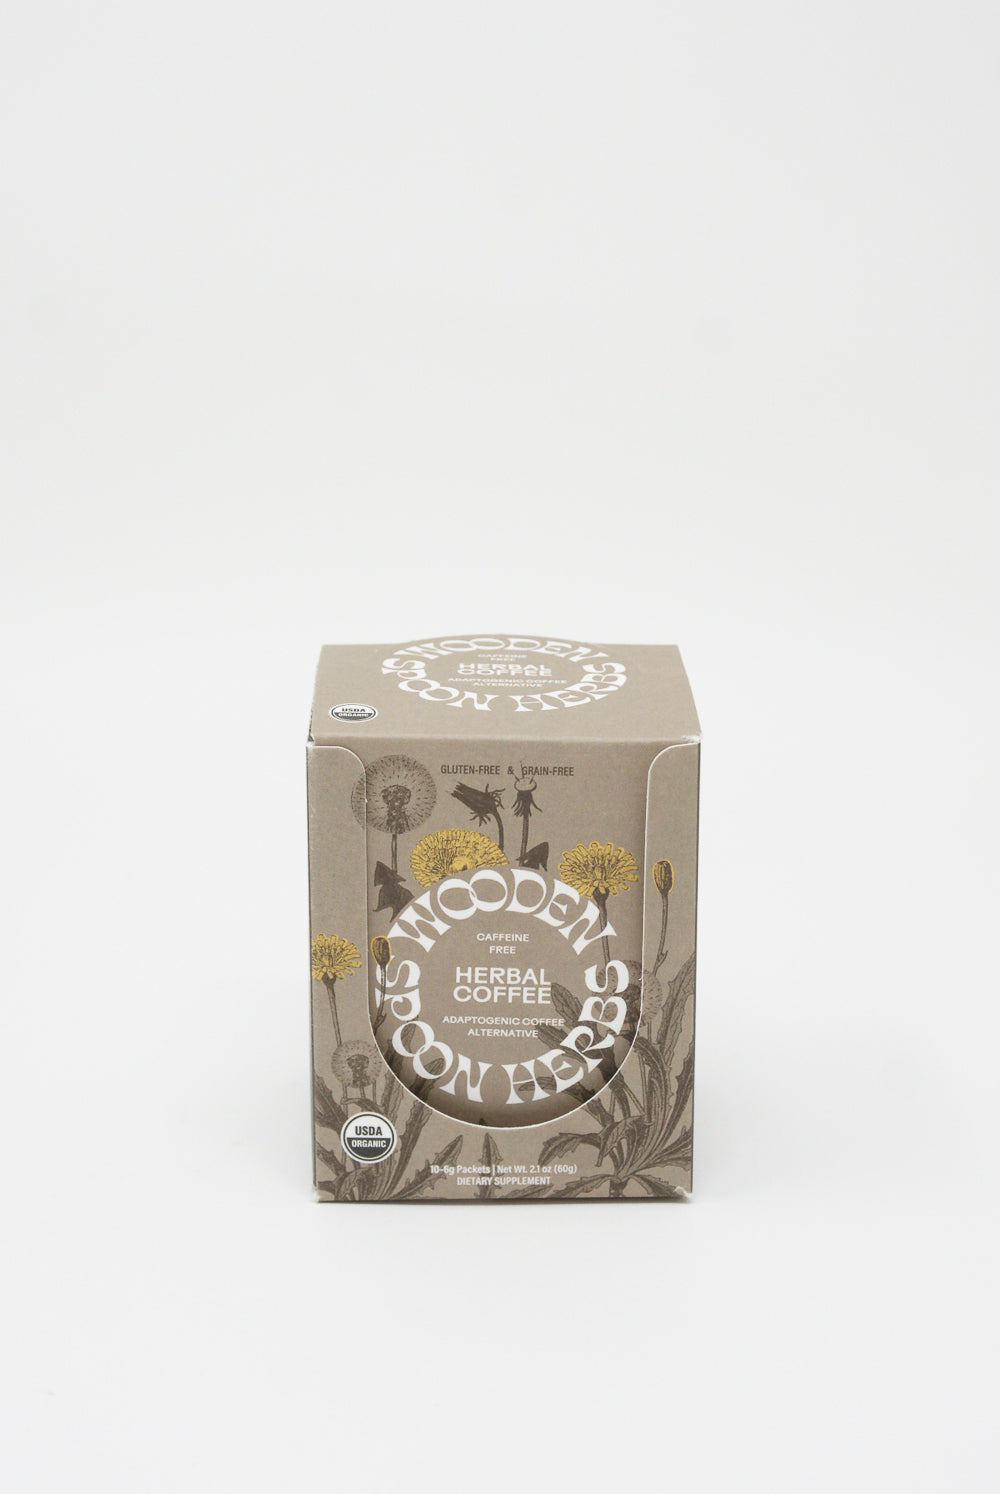 Wooden Spoon Herbs - Herbal Coffee Sachets (10 pack)